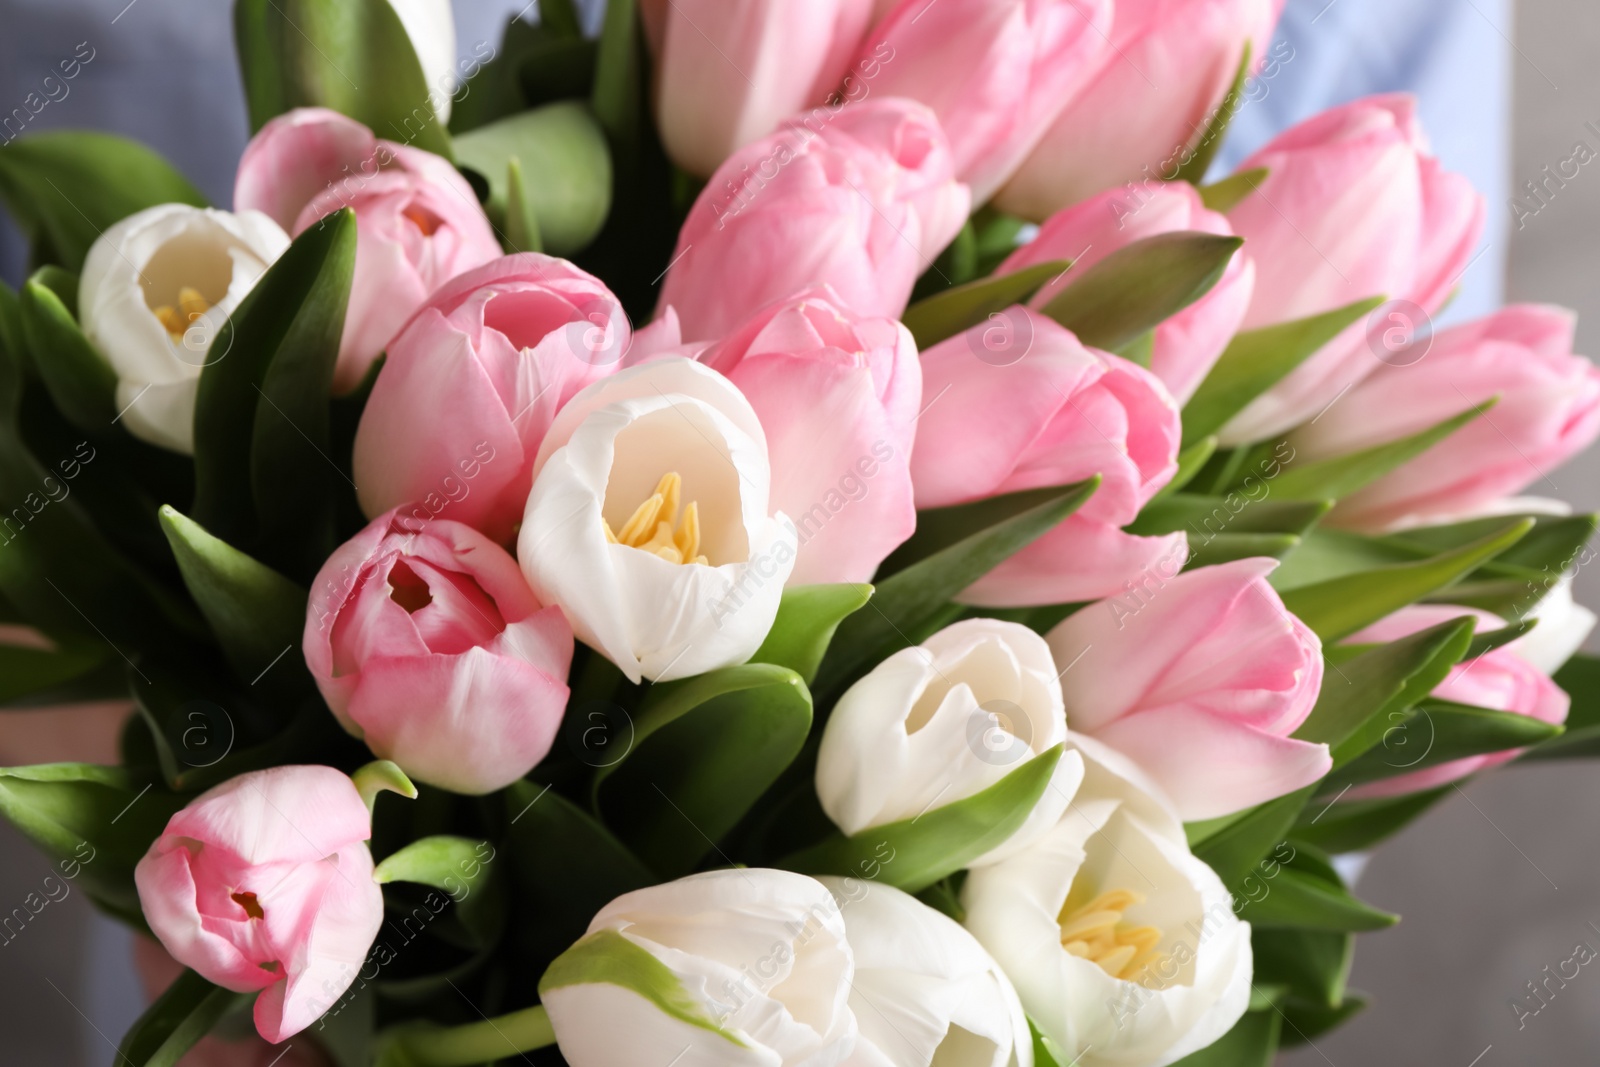 Photo of Big bouquet of beautiful tulips, closeup view